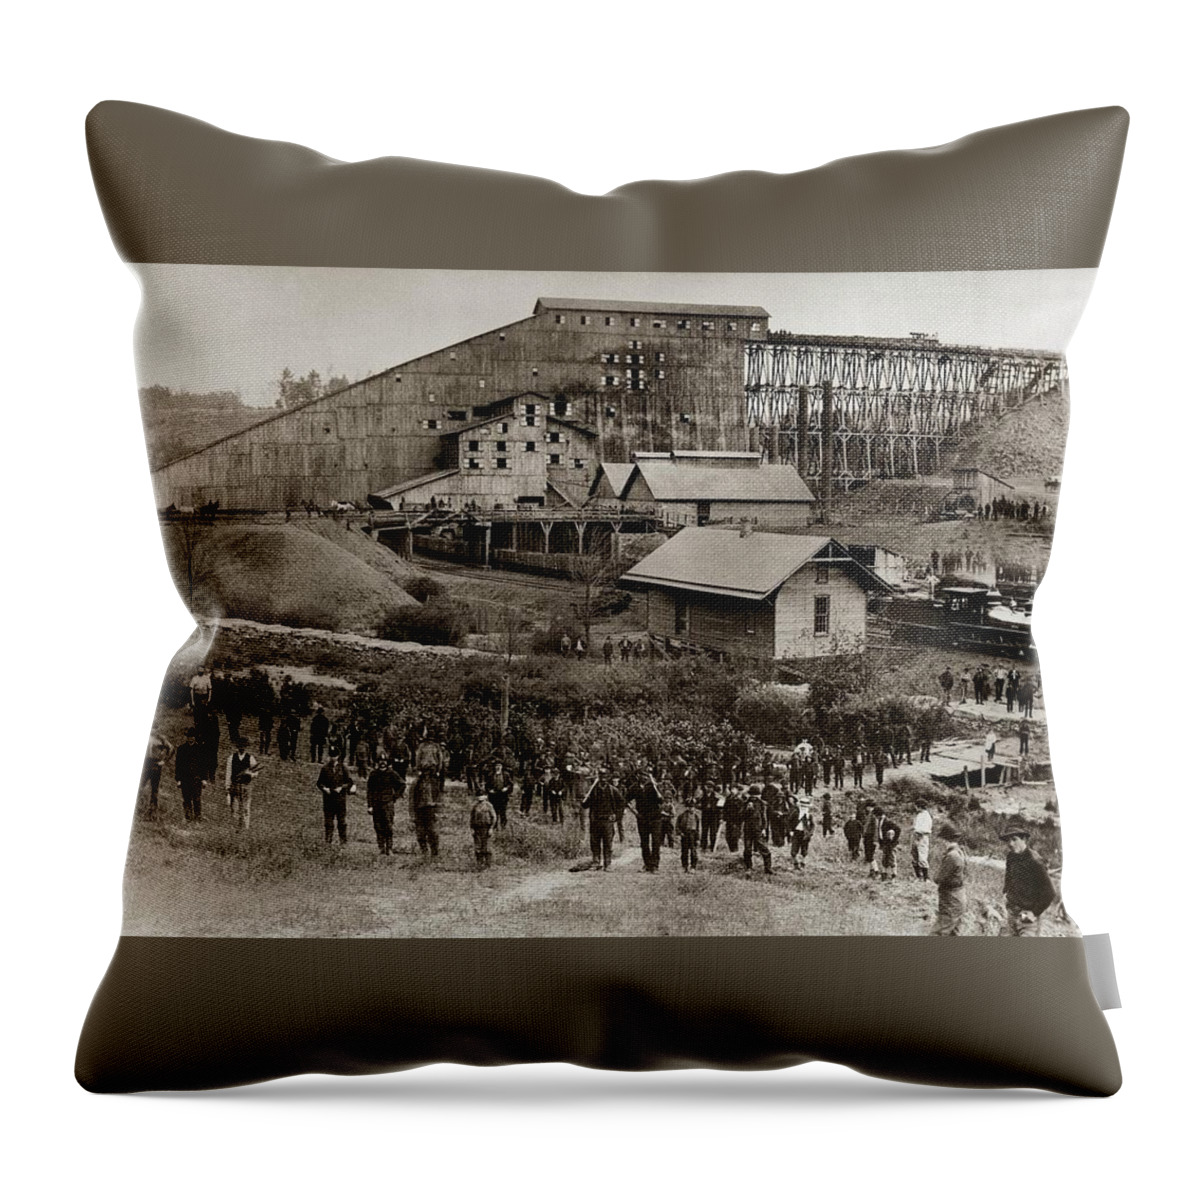 Glen Lyon Throw Pillow featuring the photograph Glen Lyon PA Susquehanna Coal Co Breaker late 1800s by Arthur Miller